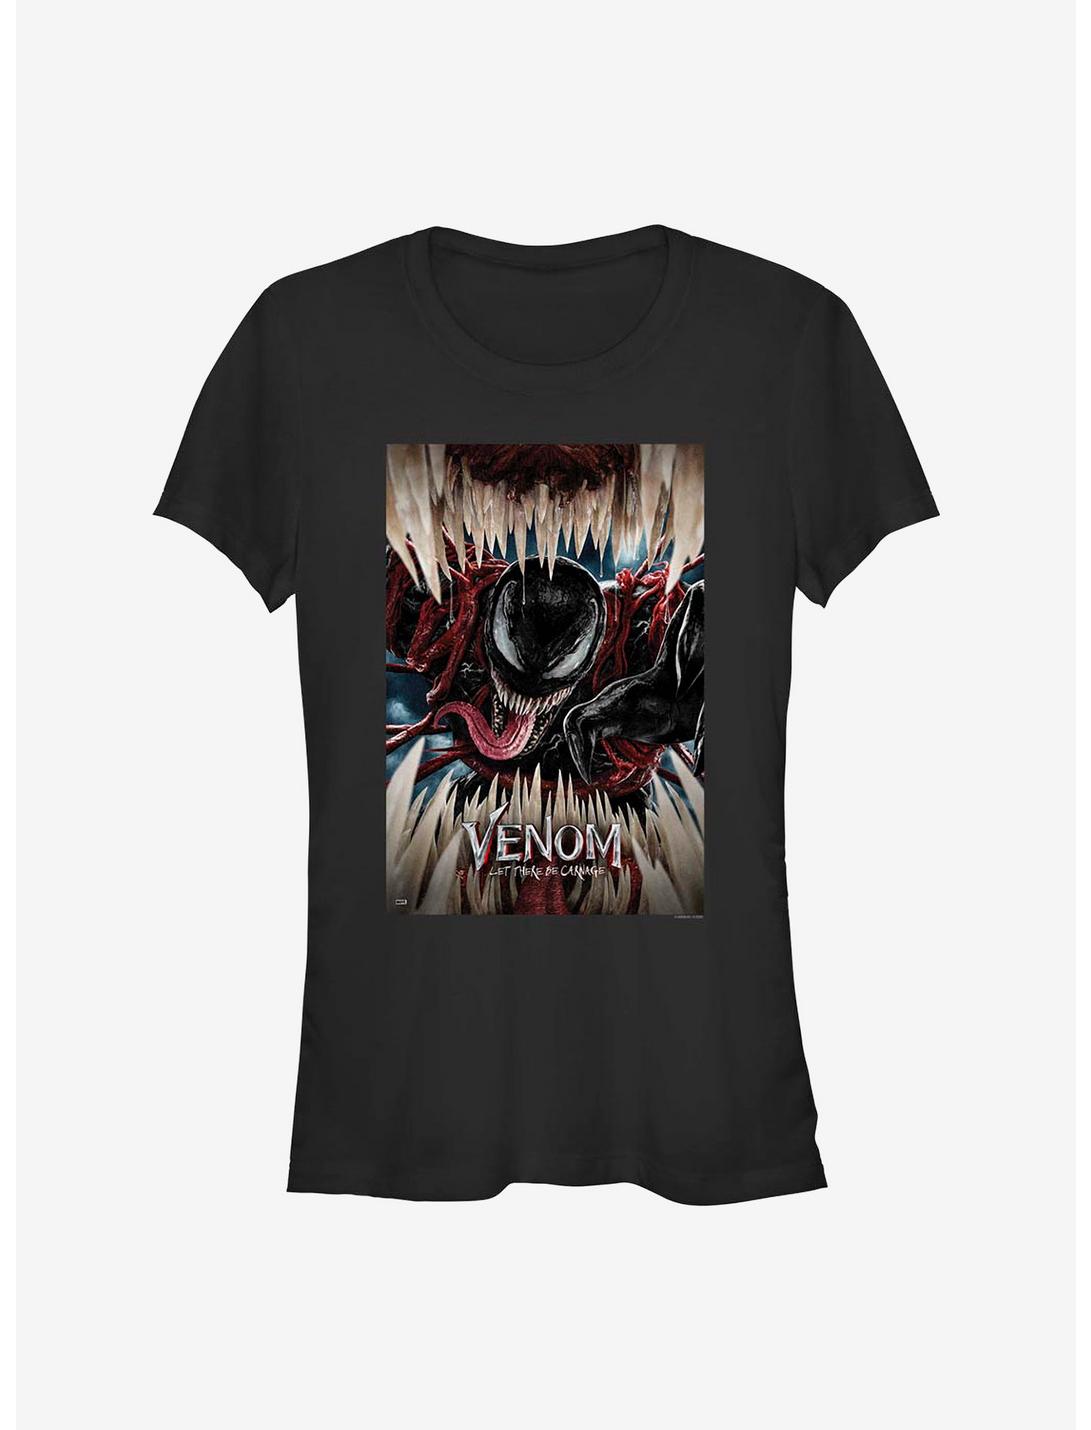 Marvel Venom Let There Be Carnage Girls T-Shirt, BLACK, hi-res